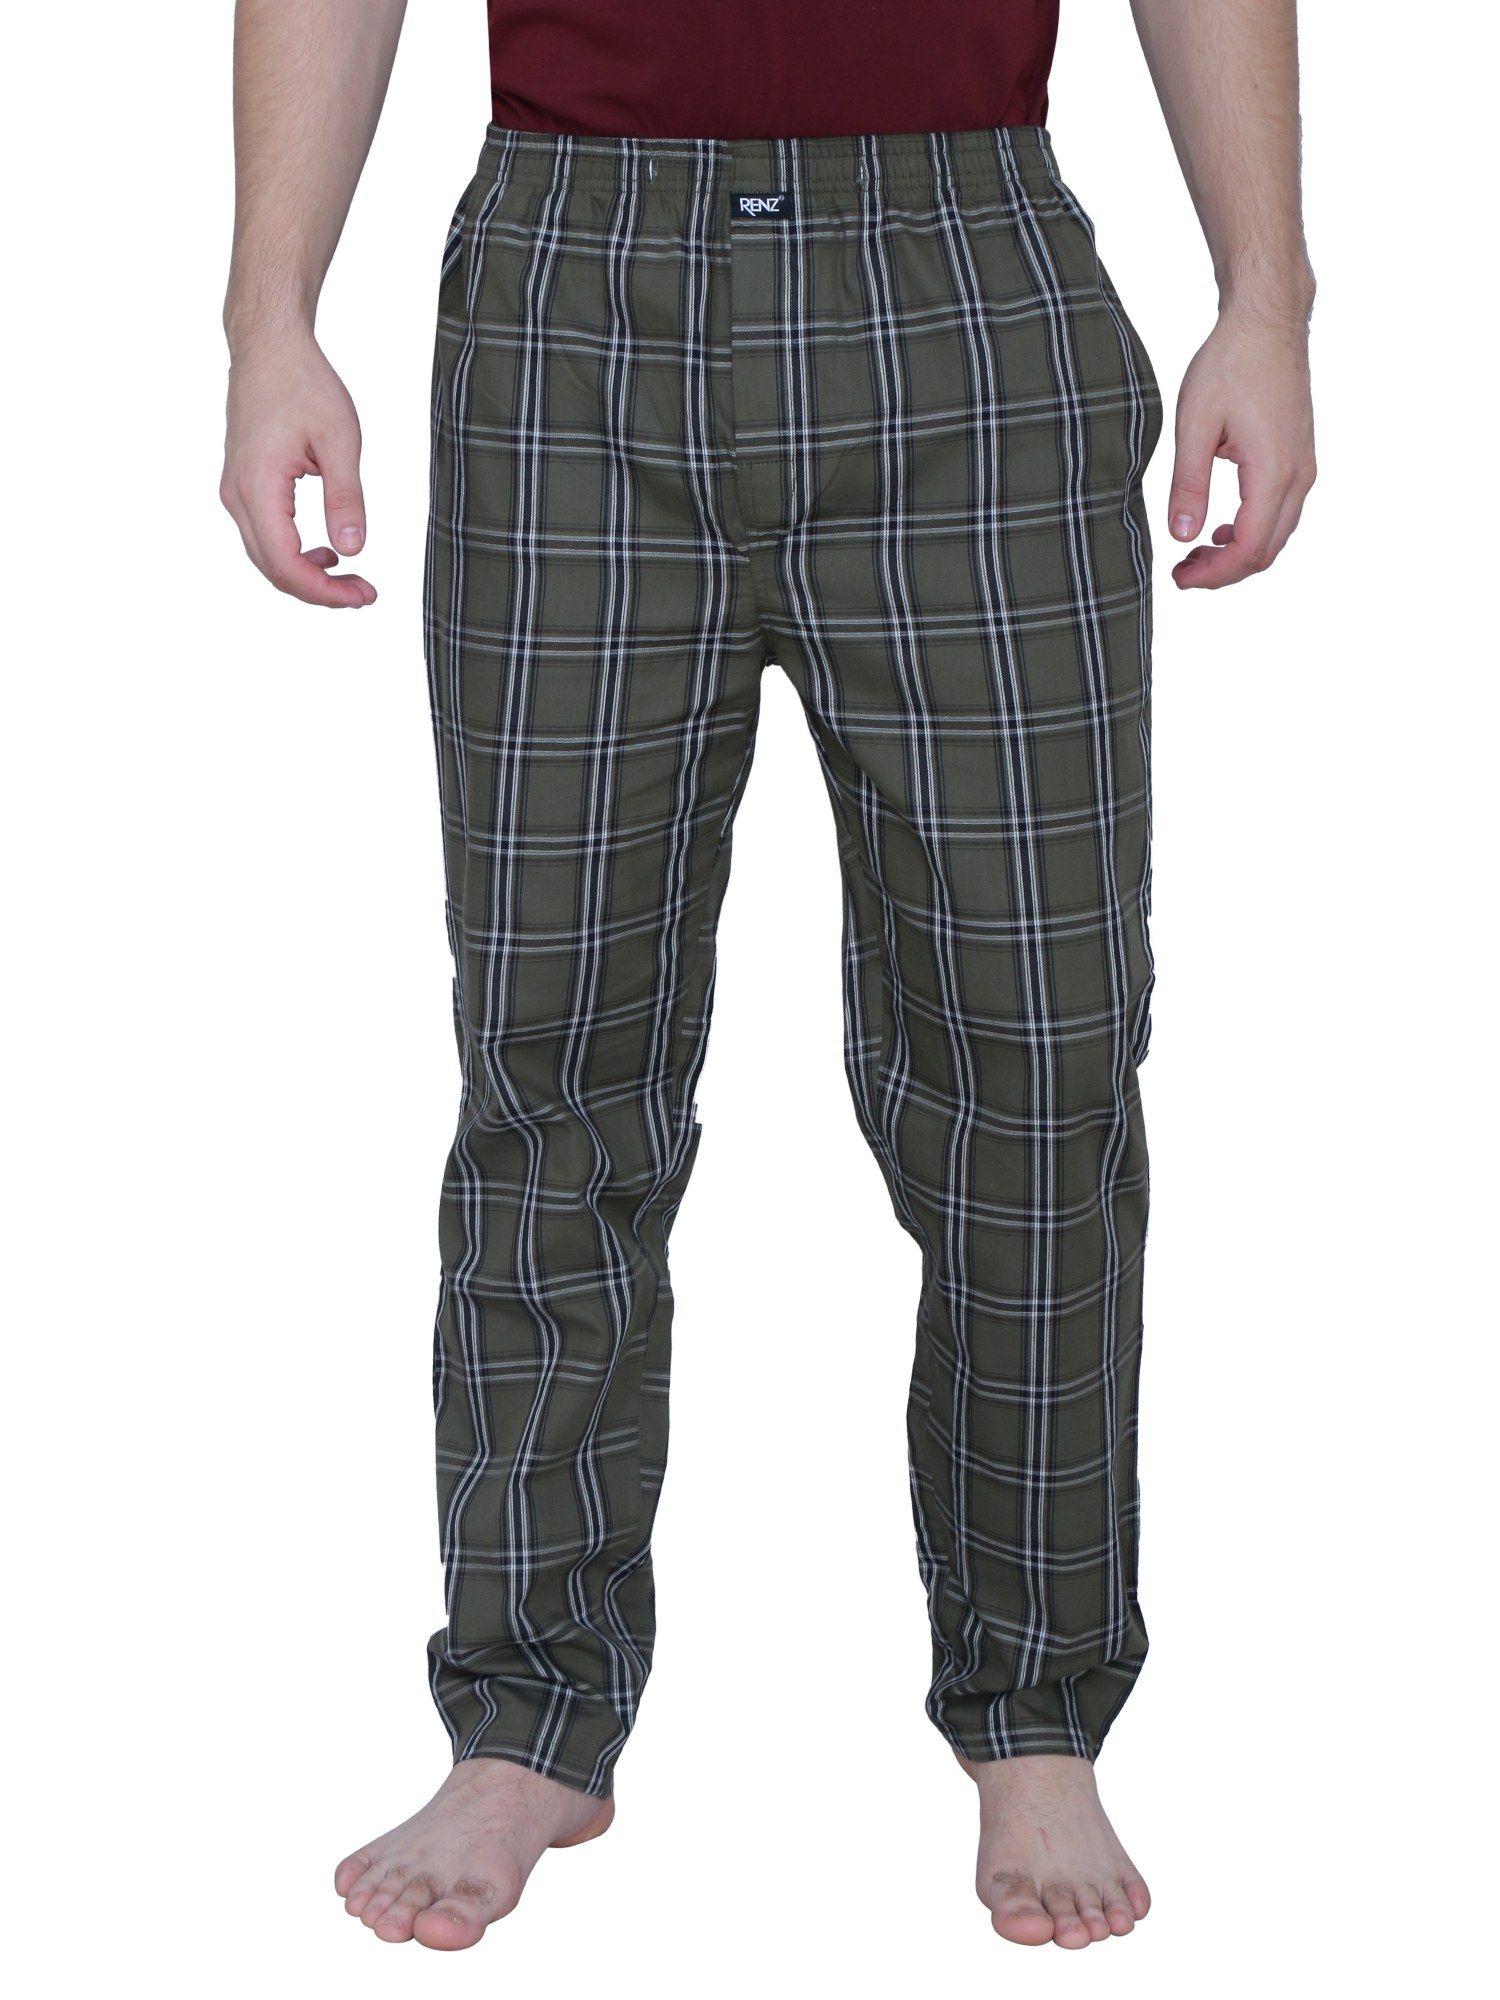 super combed cotton carbon finish twill checks pyjama